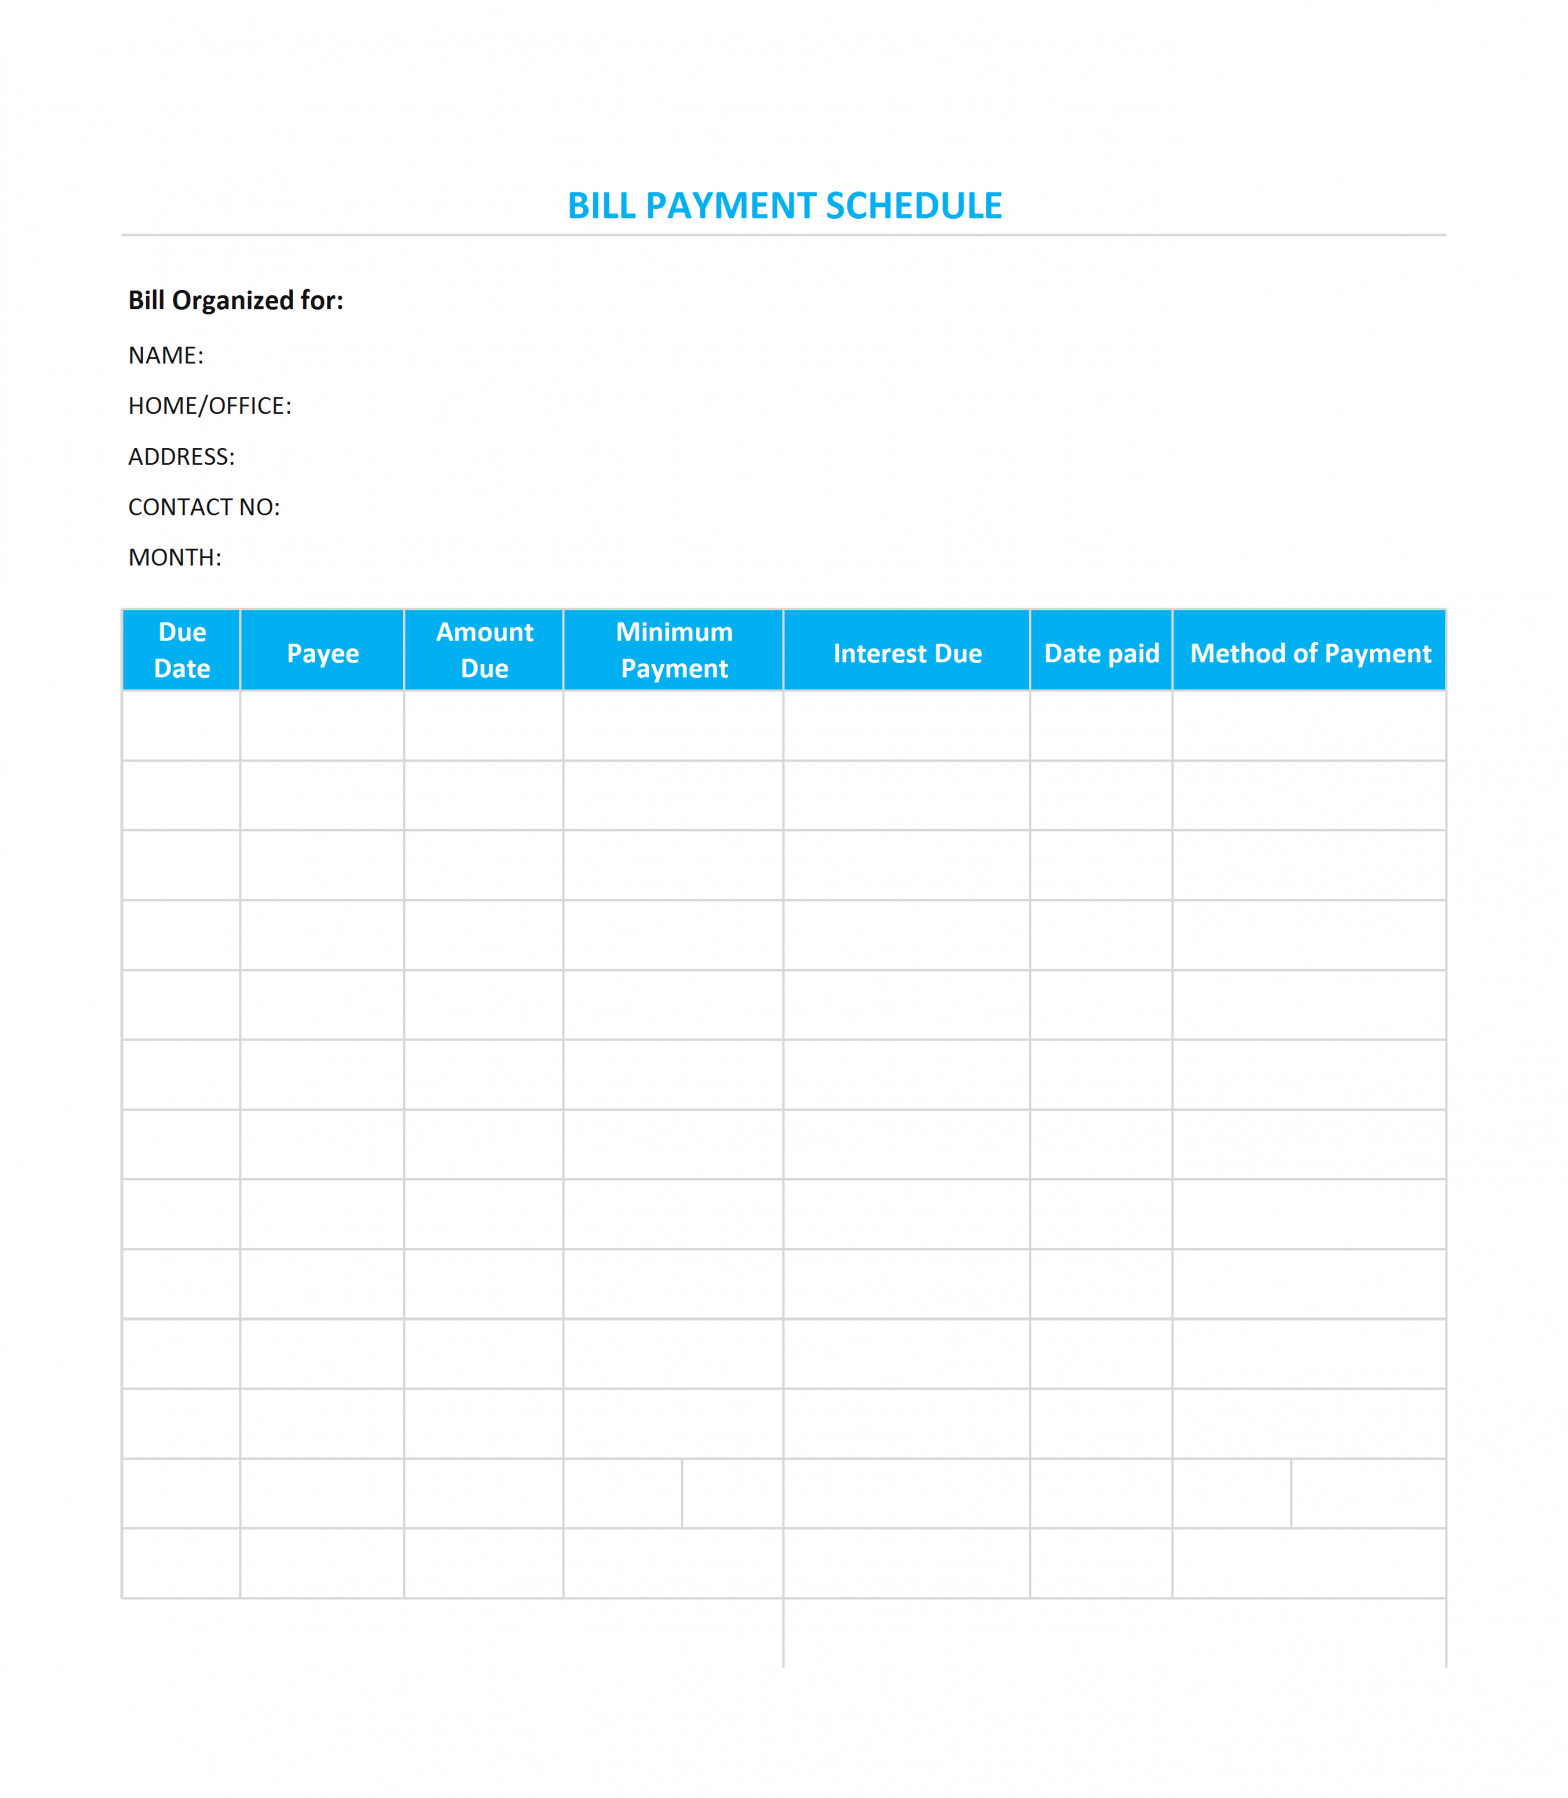 Bill Payment Calendar Template Bill Payment Schedule Template Google Docs Templates